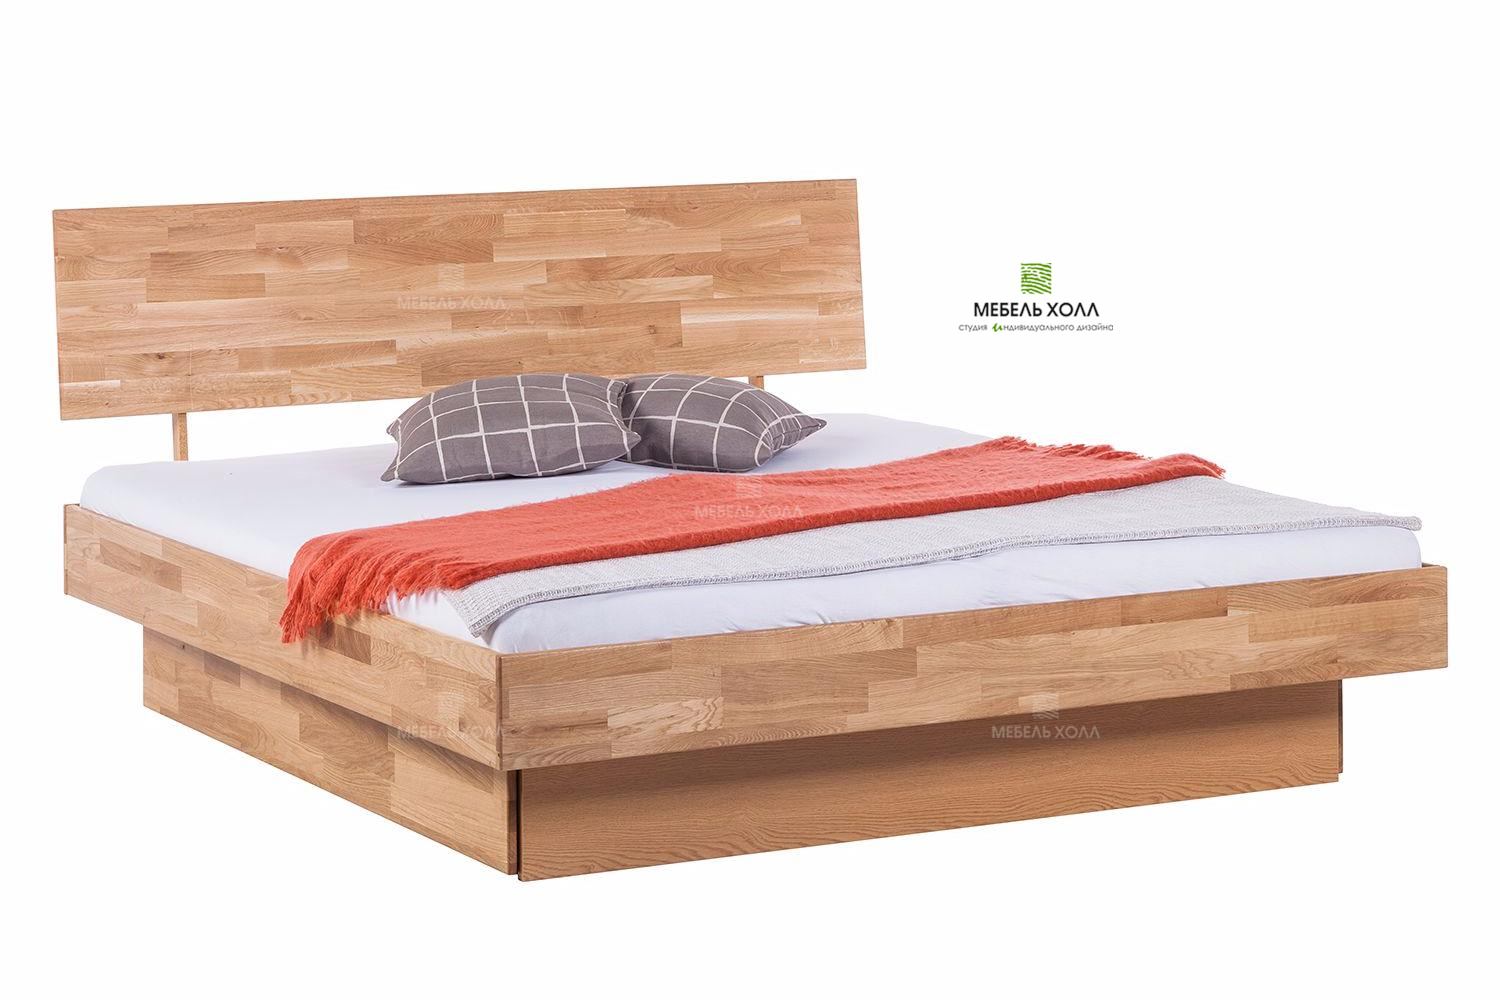 Кровать на два спальных места из шпона с одним сплошным выдвижным ящиком на направляющих компании Hettich.